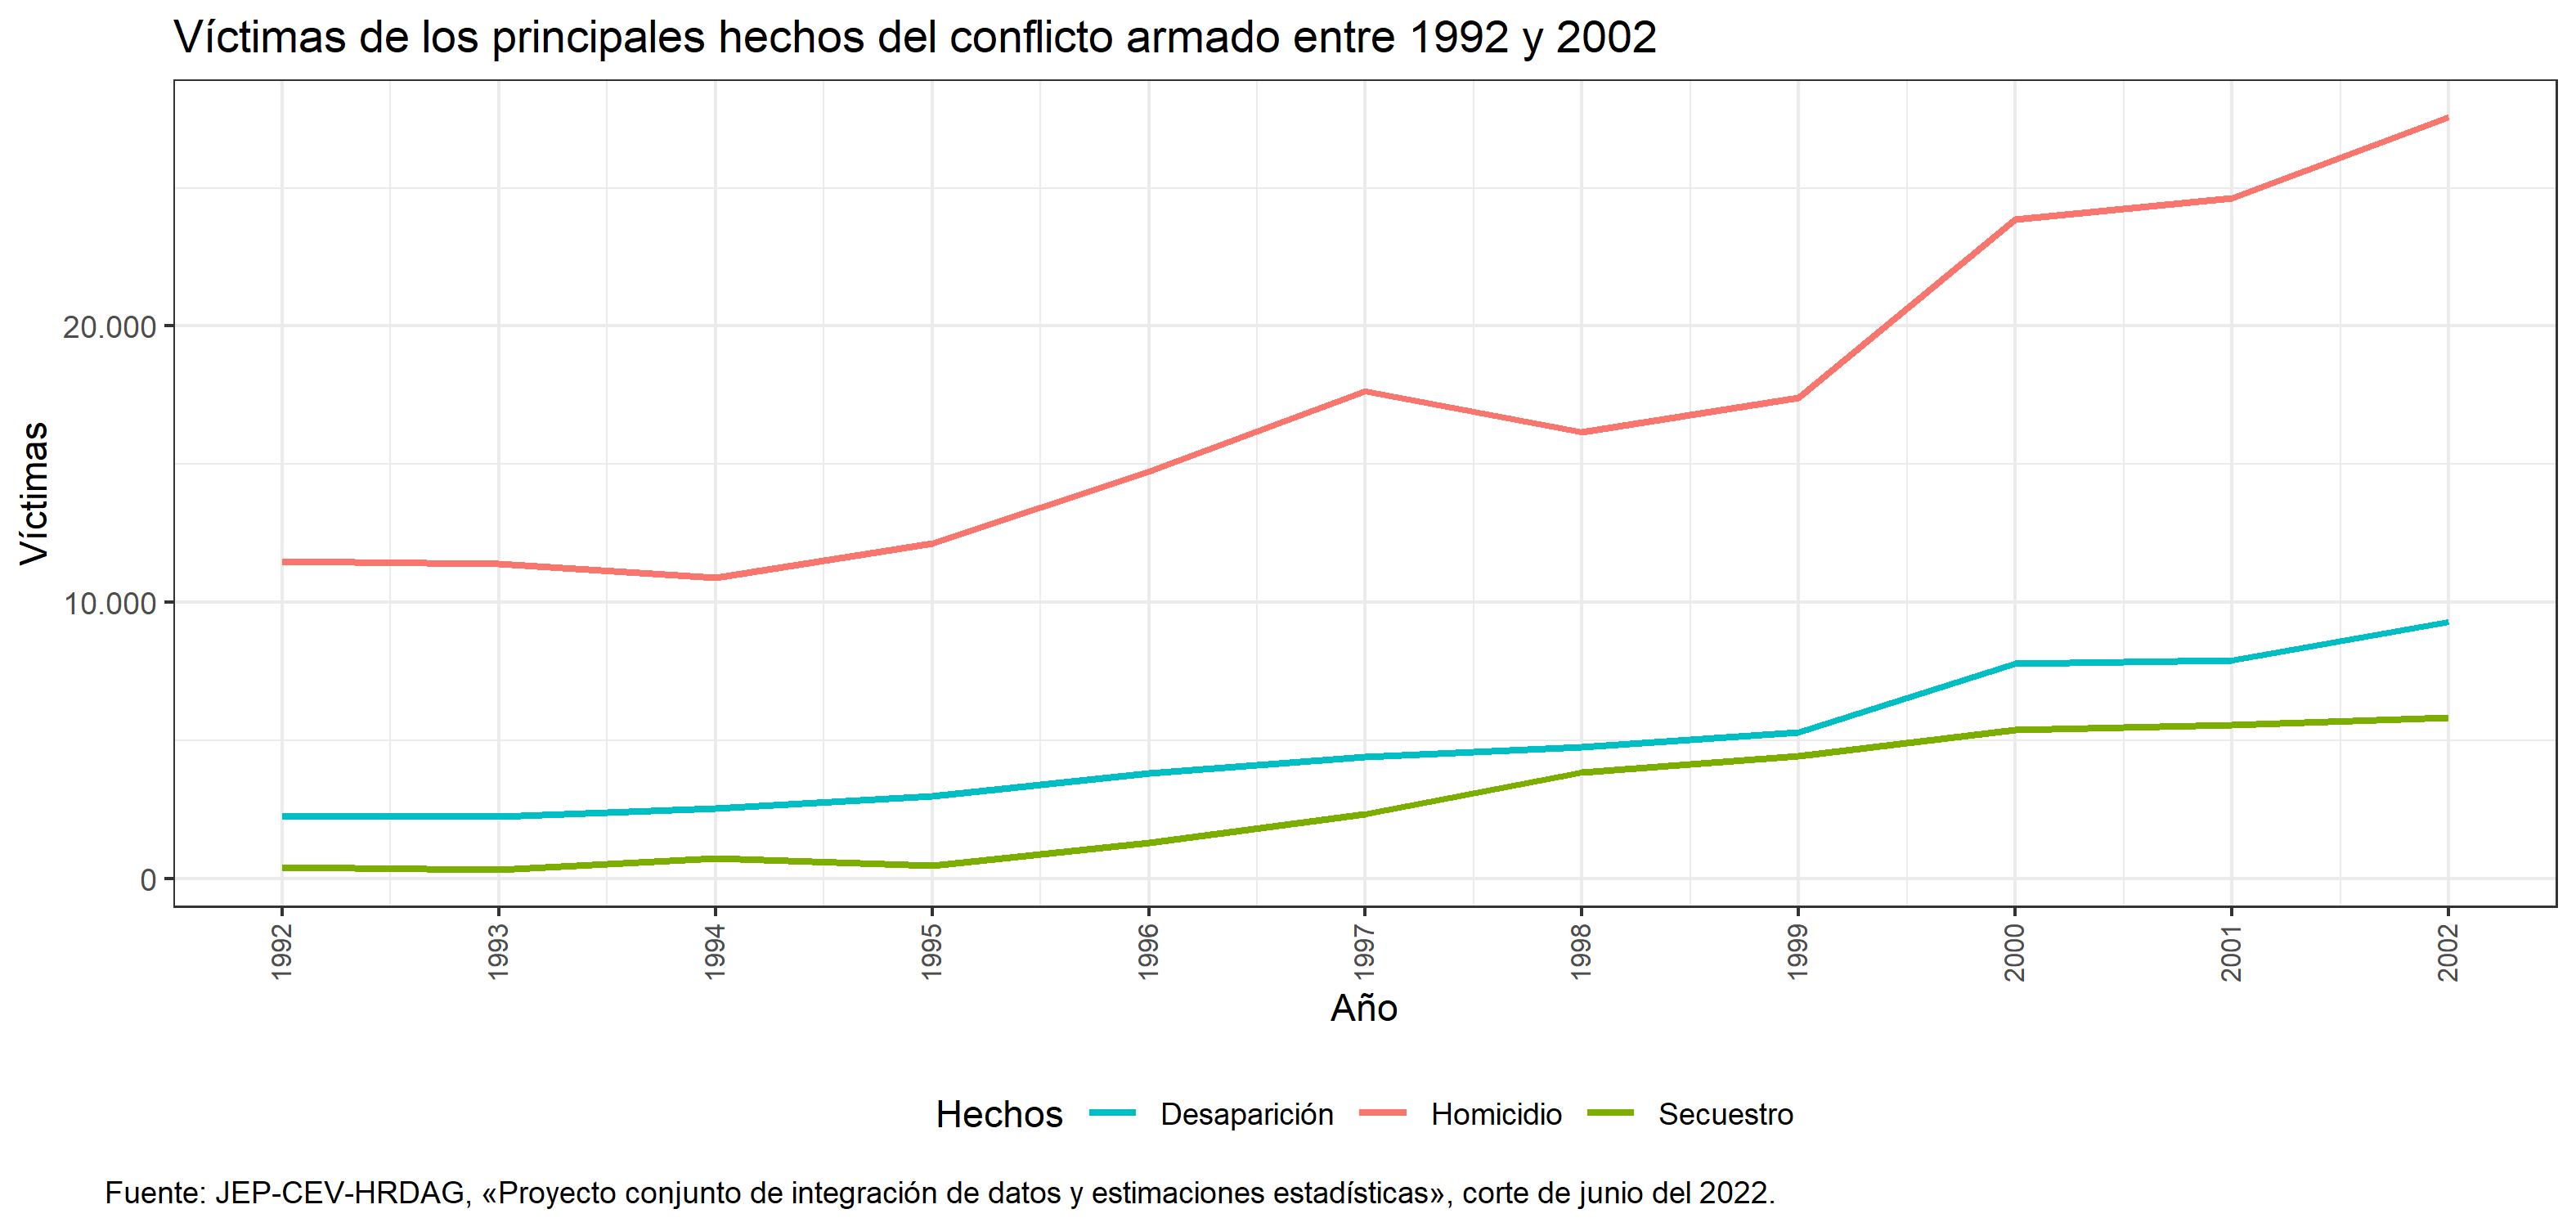 Víctimas de los principales hechos del conflicto armado (1992-2002)